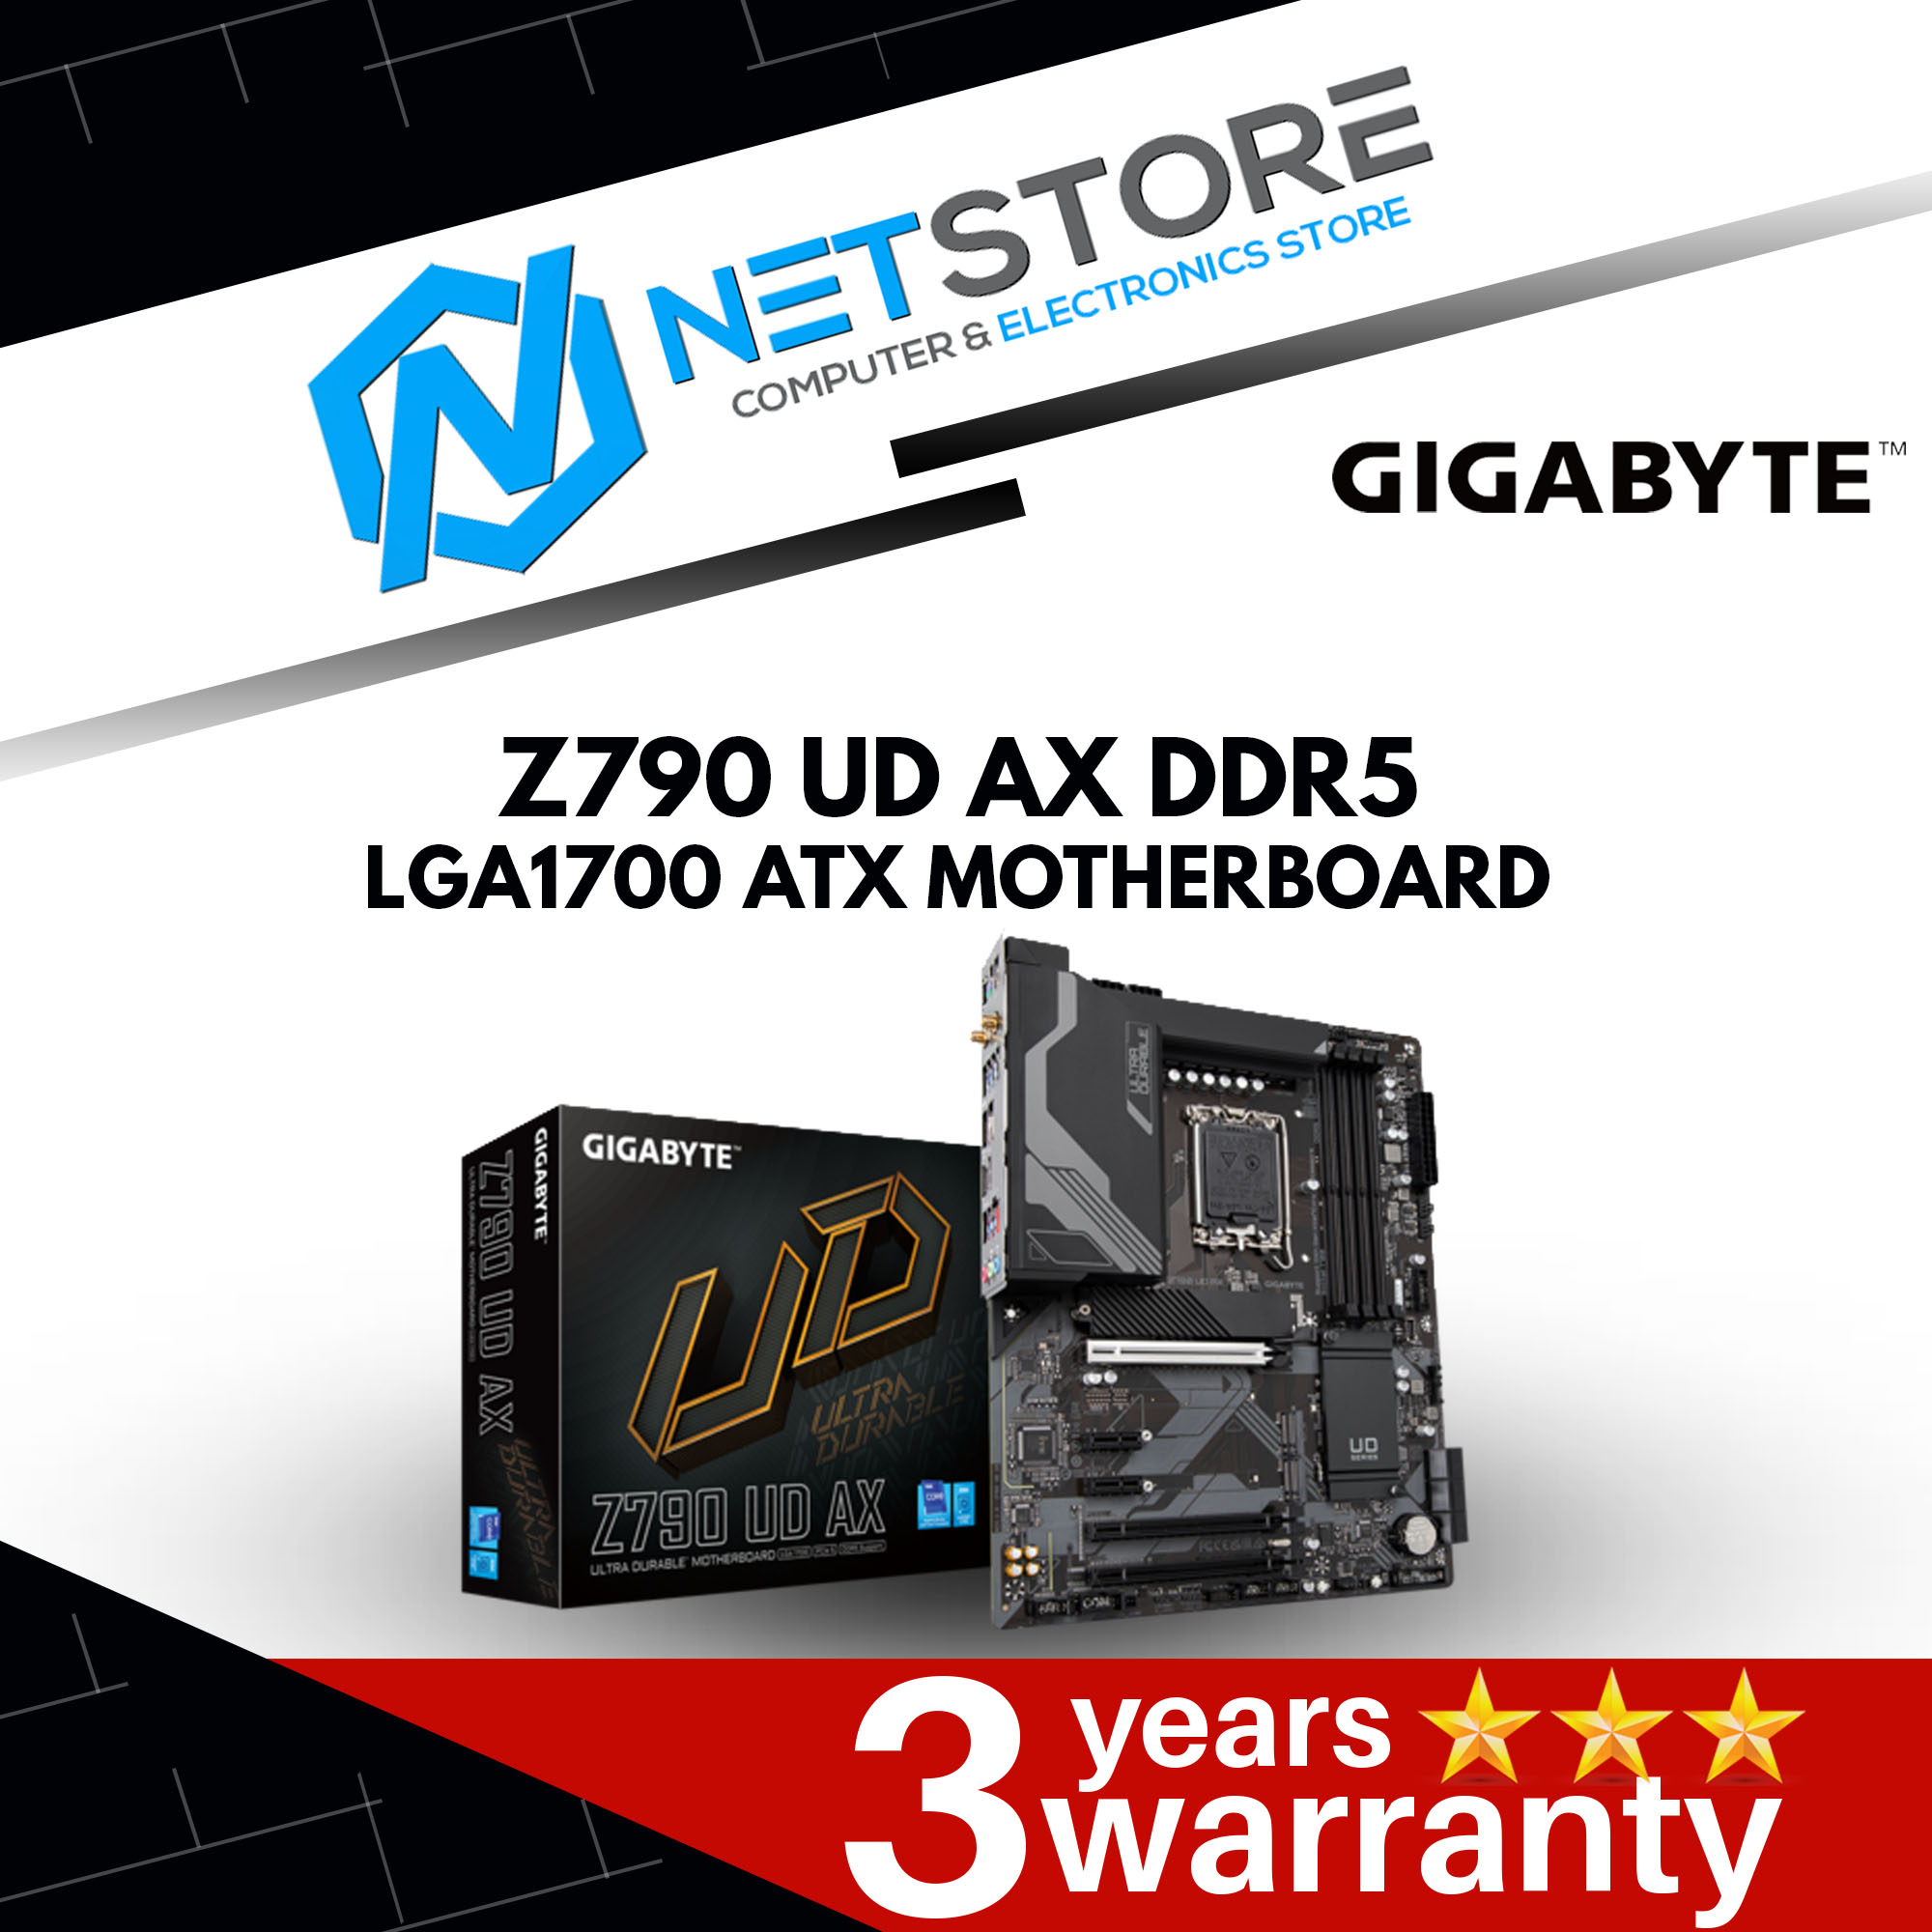 GIGABYTE Z790 UD AX DDR5 LGA1700 ATX MOTHERBOARD